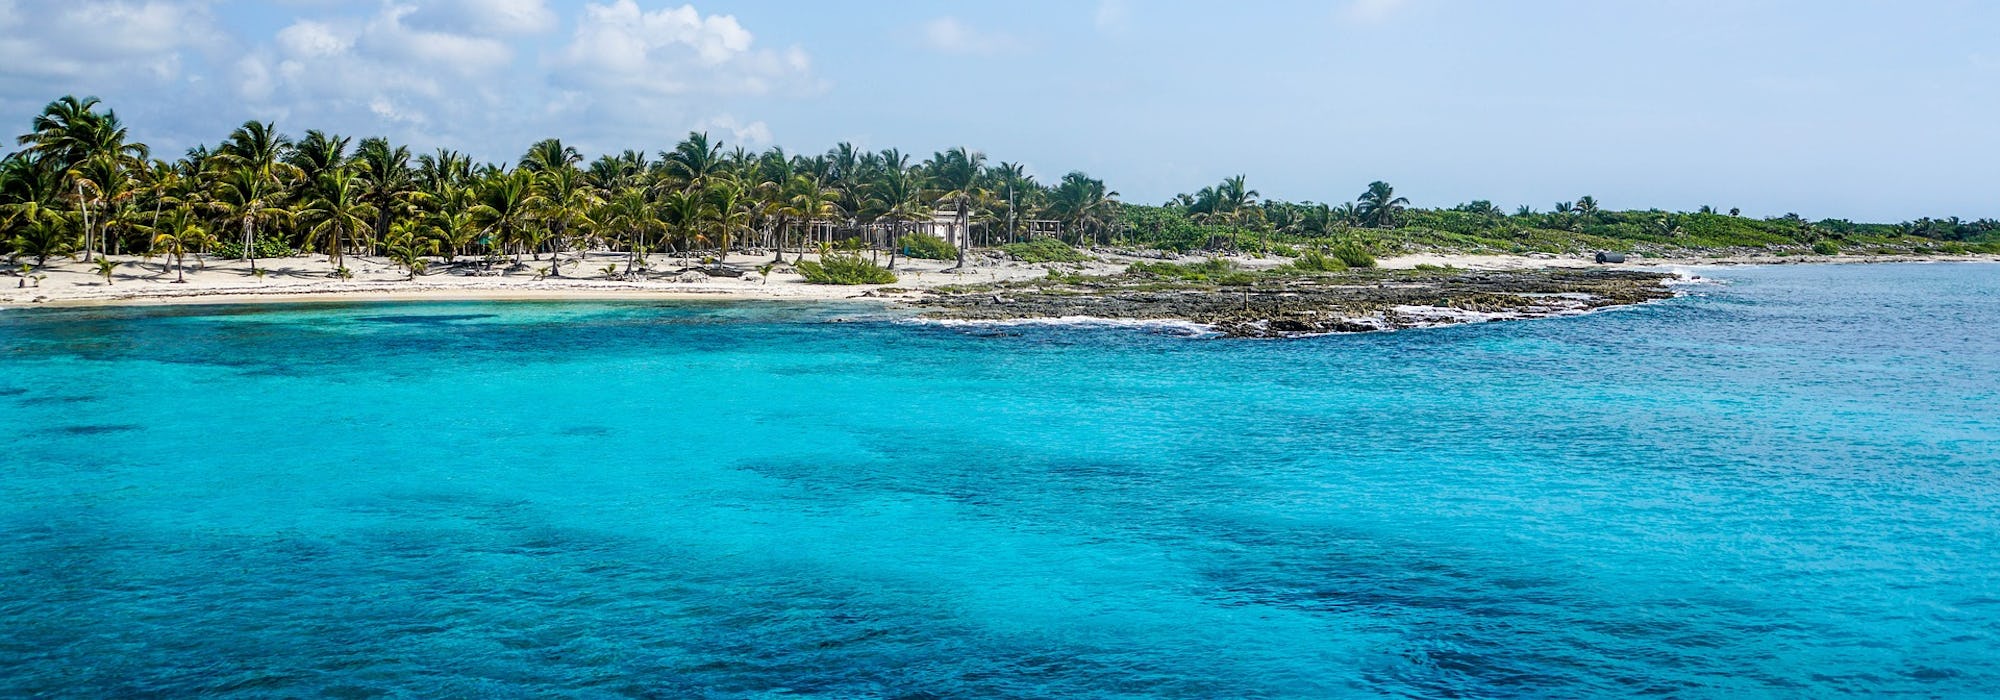 Vacker natur med ljusblått vatten och palmer på en strand i bakgrunden. 